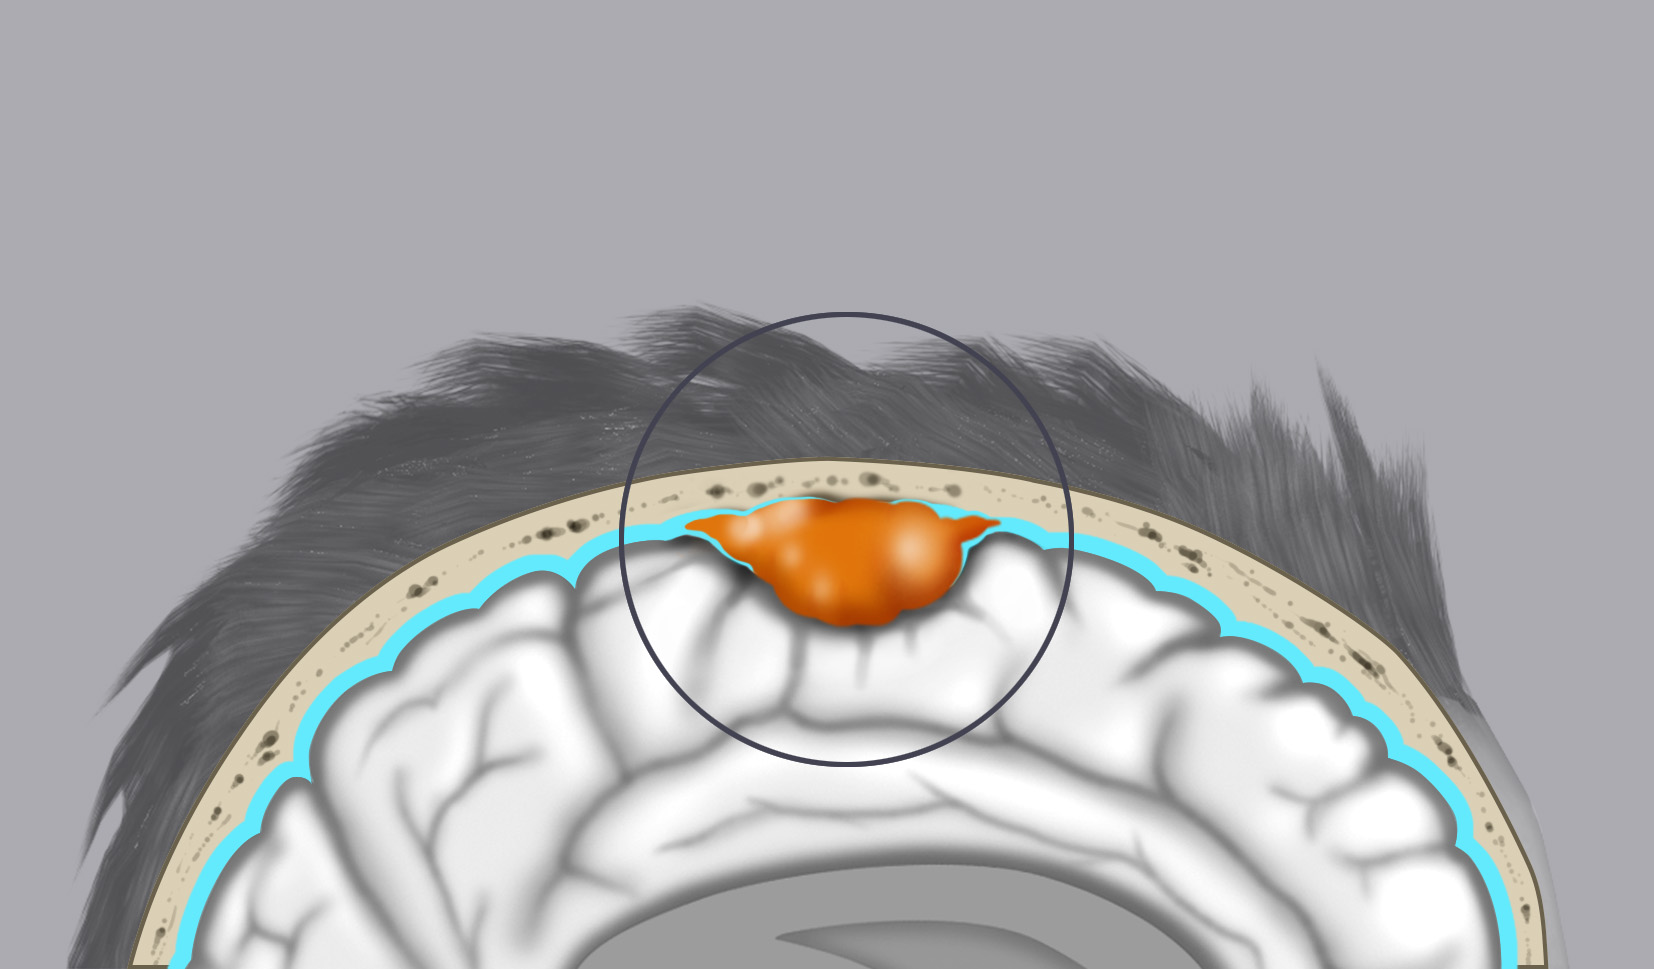 Il disegno mostra un meningioma della convessità: il tumore origina dalle meningi che rivestono l’encefalo.